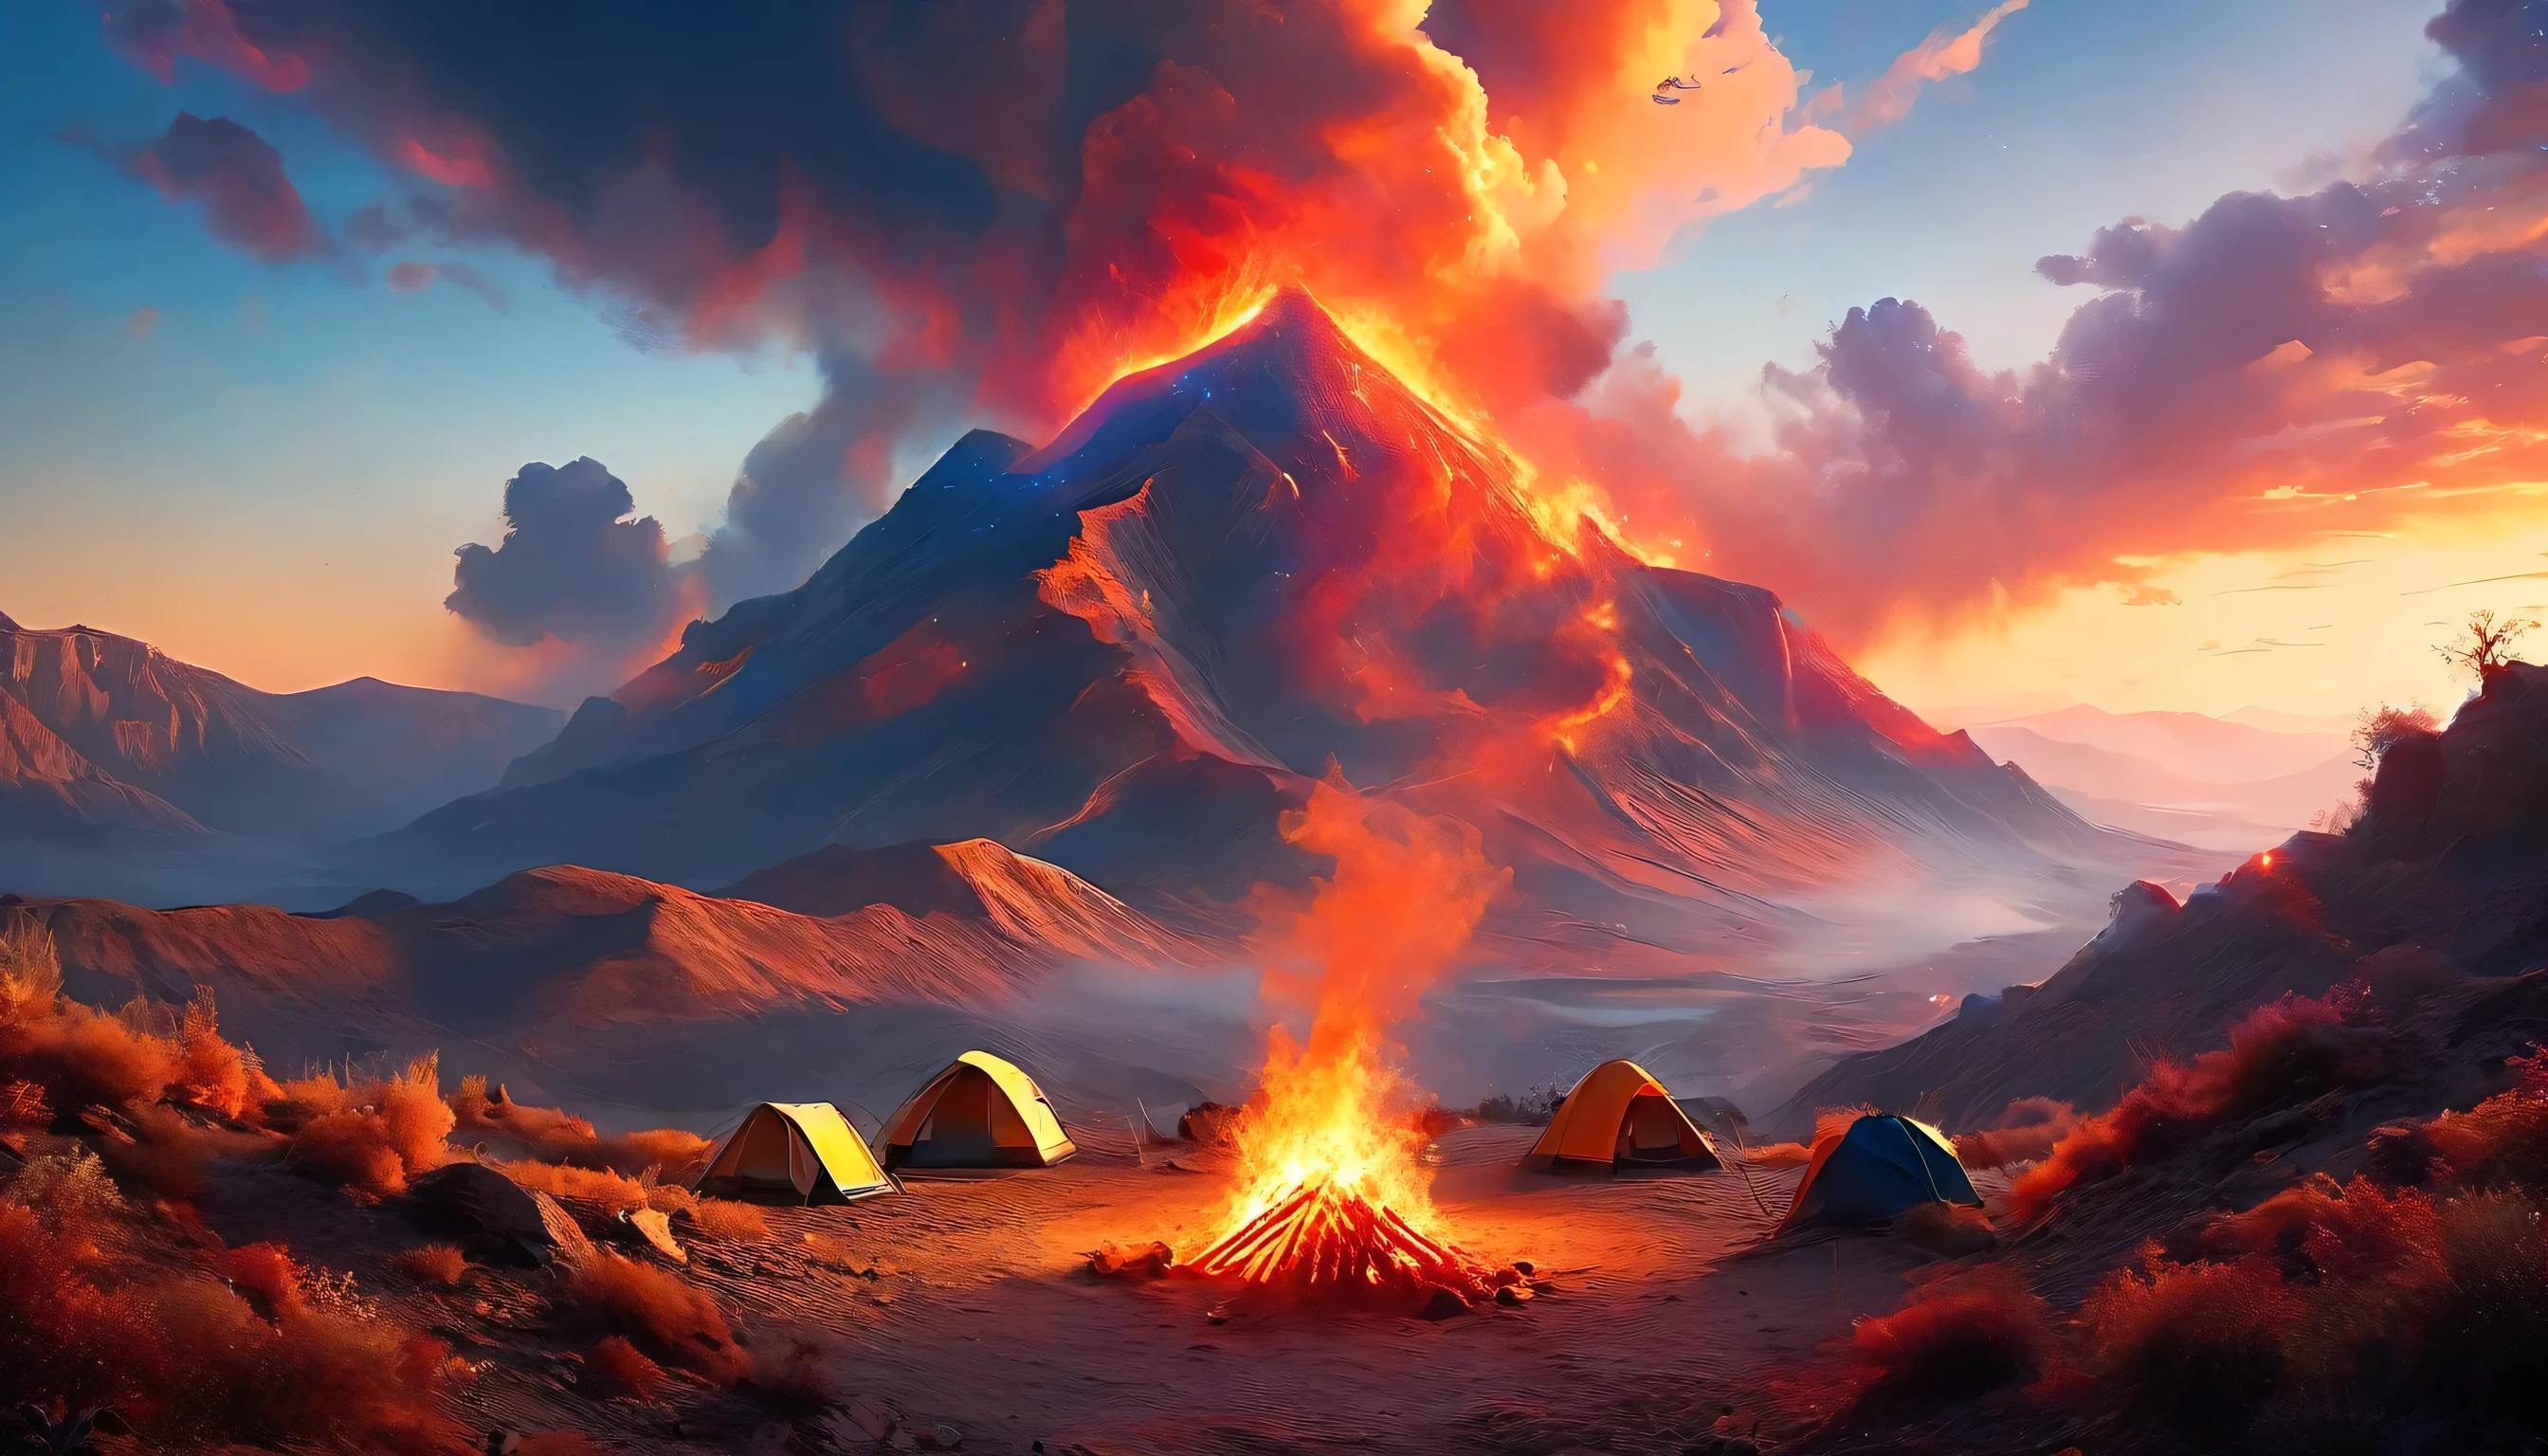 Арафед, картинка кемпинга (палатка: 1.2) и маленький (костер: 1,2), на вершине пустынной горы, закат, небо в разных оттенках  (Красный: 1.1), (Апельсин: 1.1), (лазурный: 1.1) (фиолетовый:1.1) из пожарного лагеря поднимается дым, открывается великолепный вид на пустынный каньон и ущелья, на горизонте редкие деревья, это время спокойствия, мир, и релаксация, Лучшее качество, 16 тыс.,  фотореализм, Фотосессия, удостоенная награды National Geographic, ультра широкий план, Бешеная туманность, Леди Тень